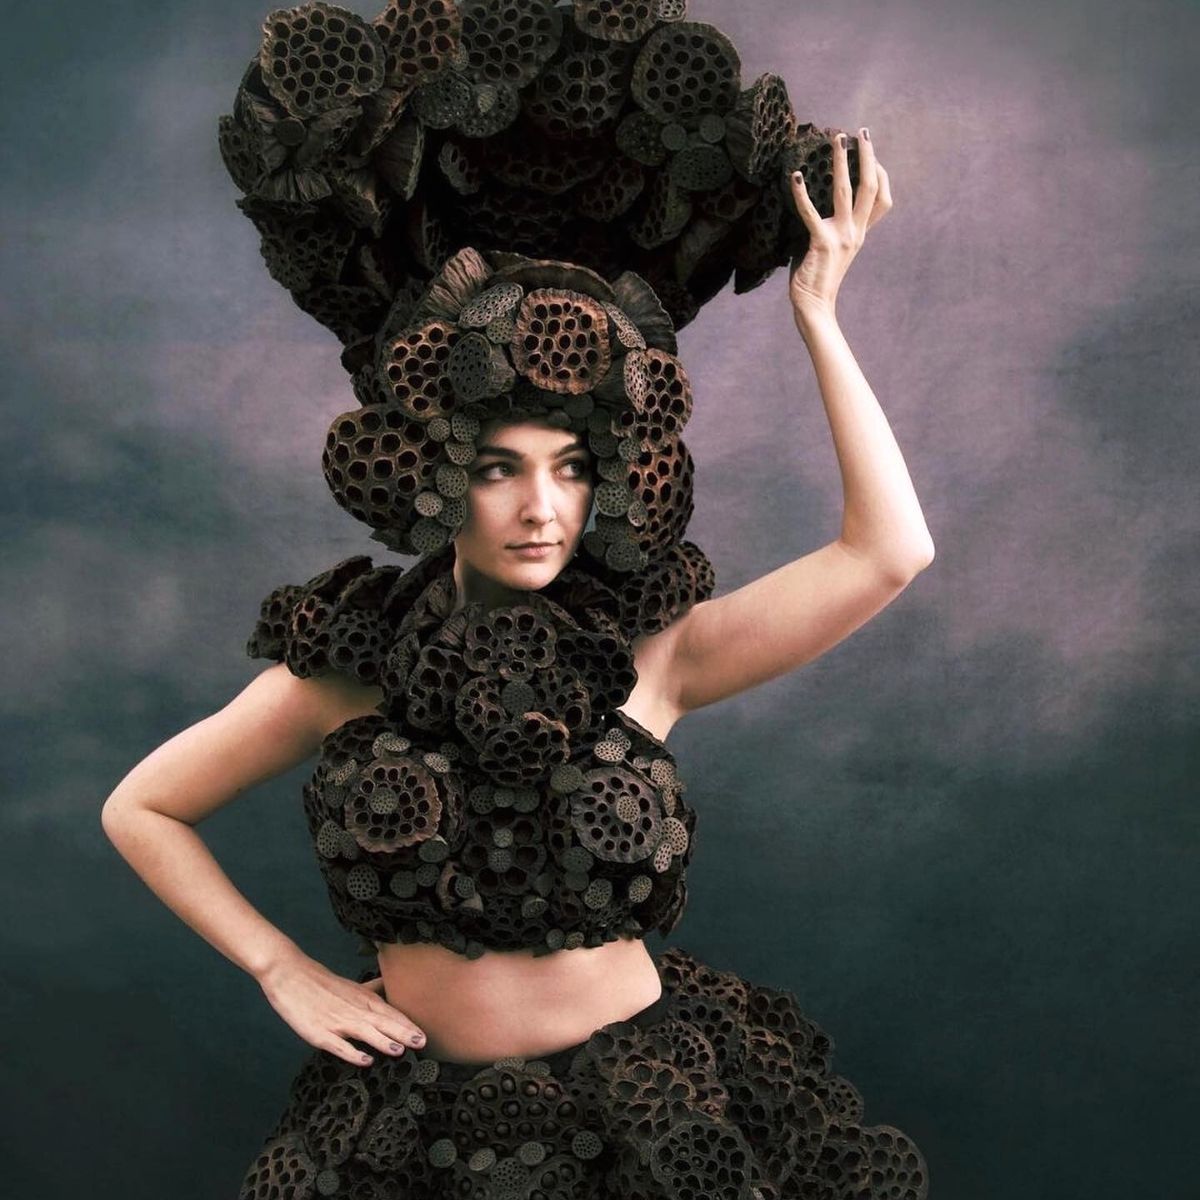 Dried Flower Skins Created by Brazilian Artist Melissa Meier